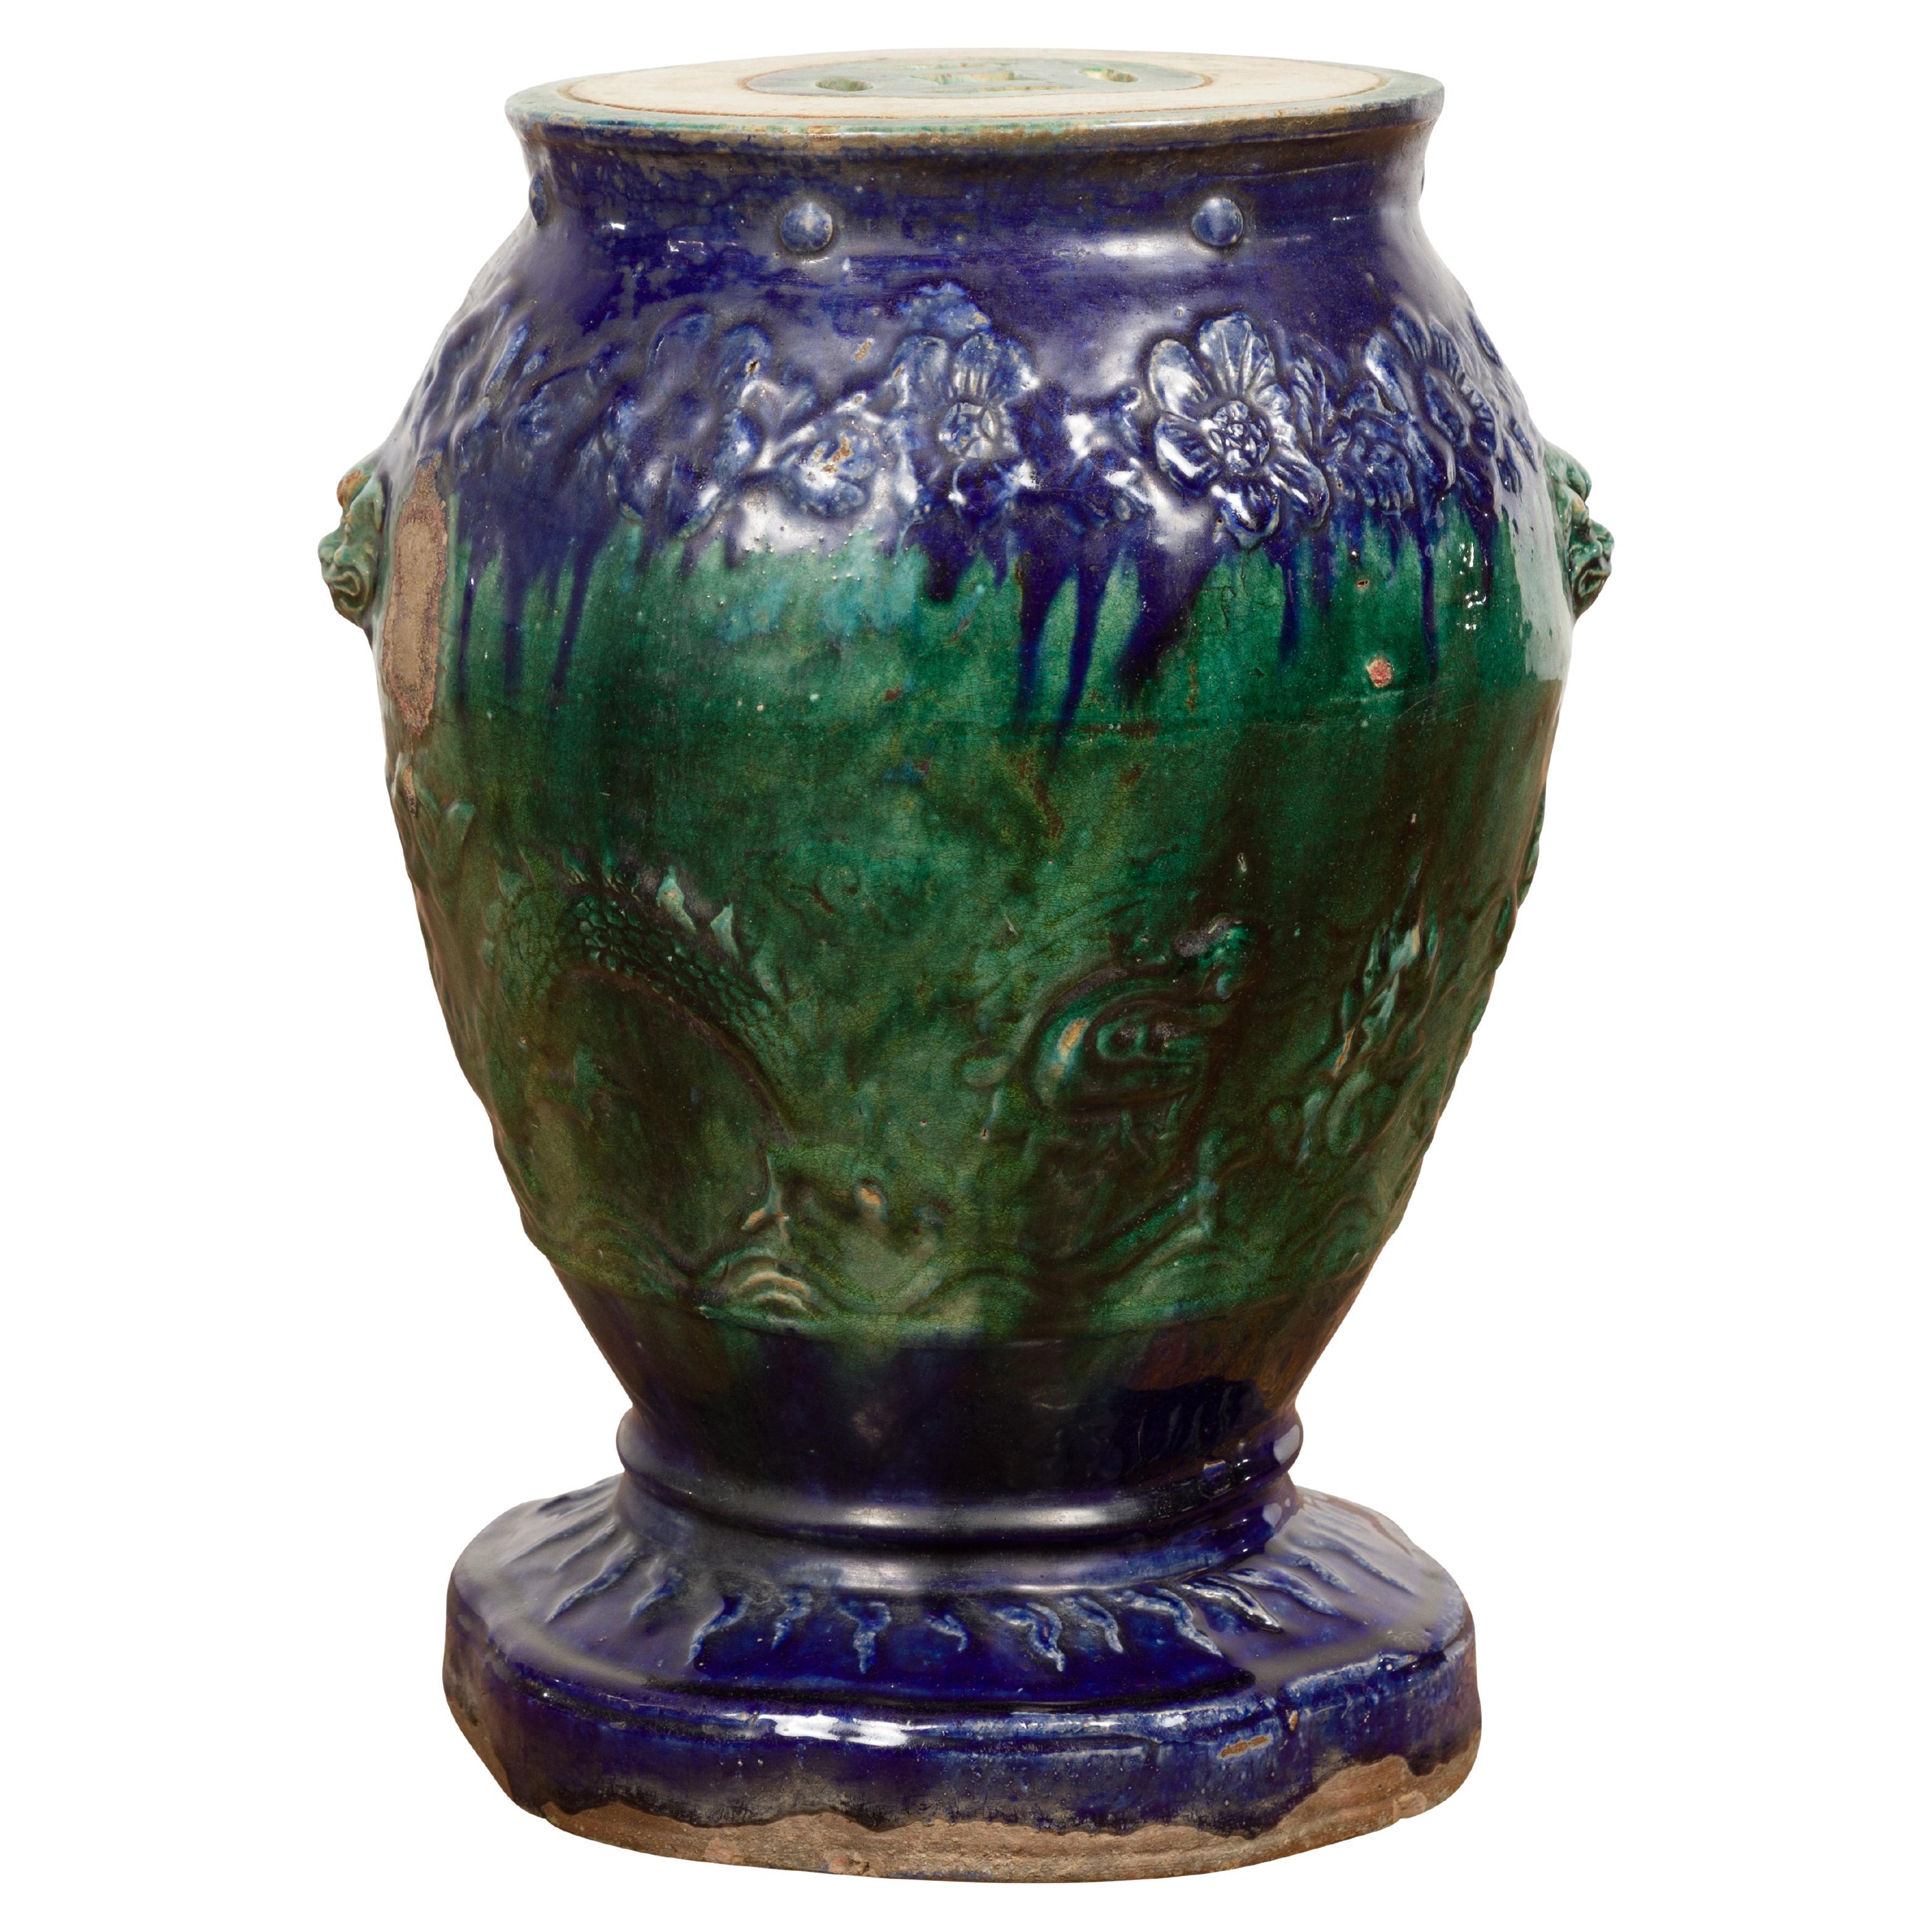 Siège de jardin antique en céramique émaillée bleue et verte Annamese sur base façonnée